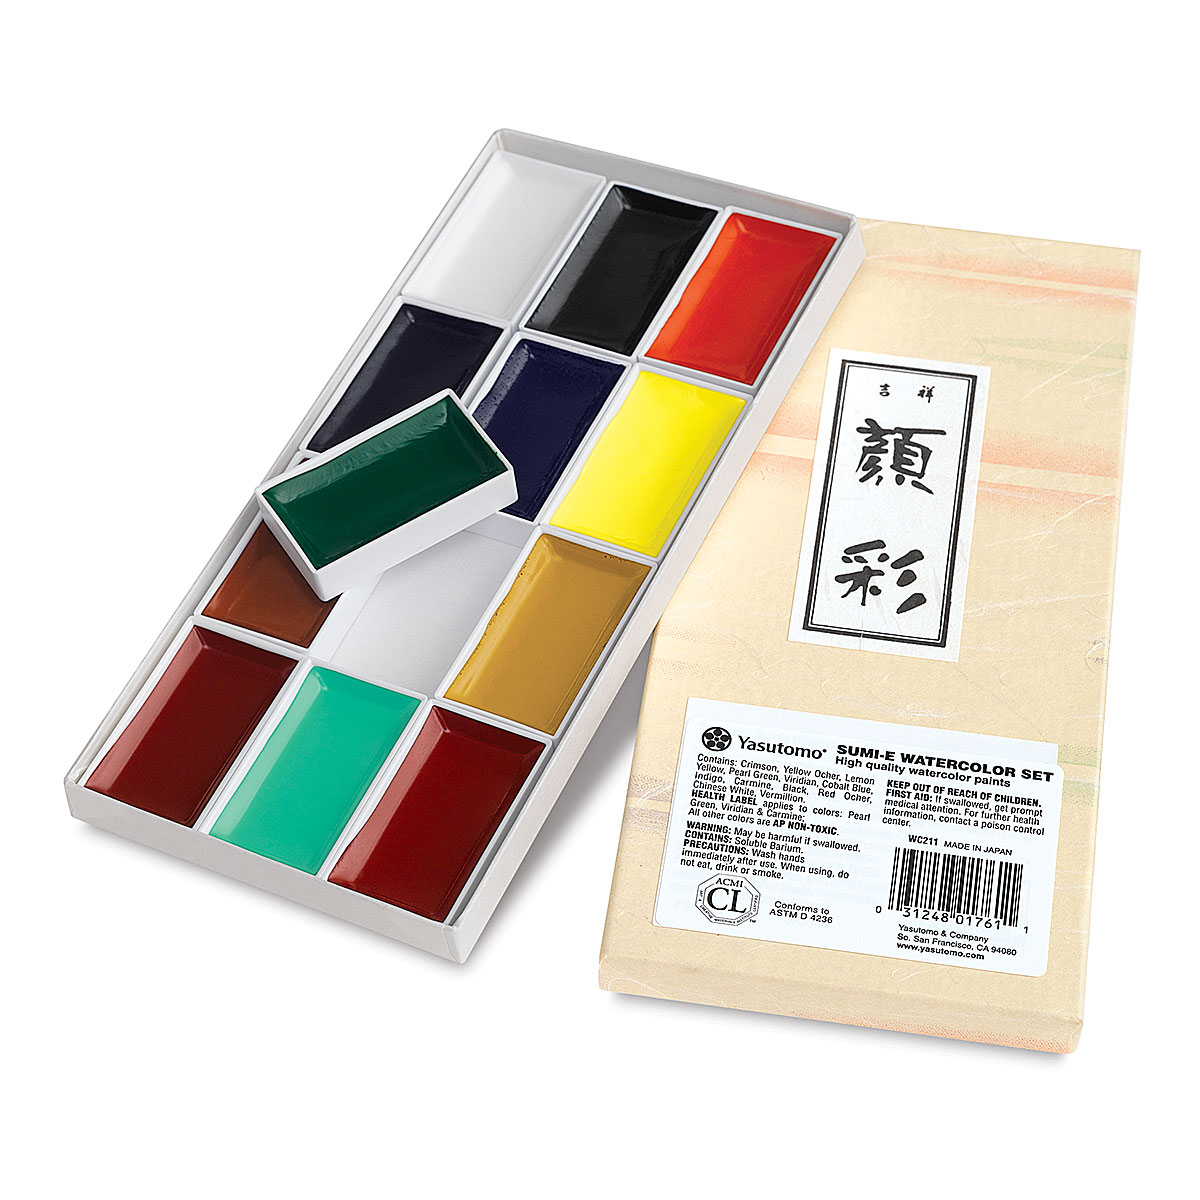 Yasutomo Sumi-e Watercolor Pan Sets